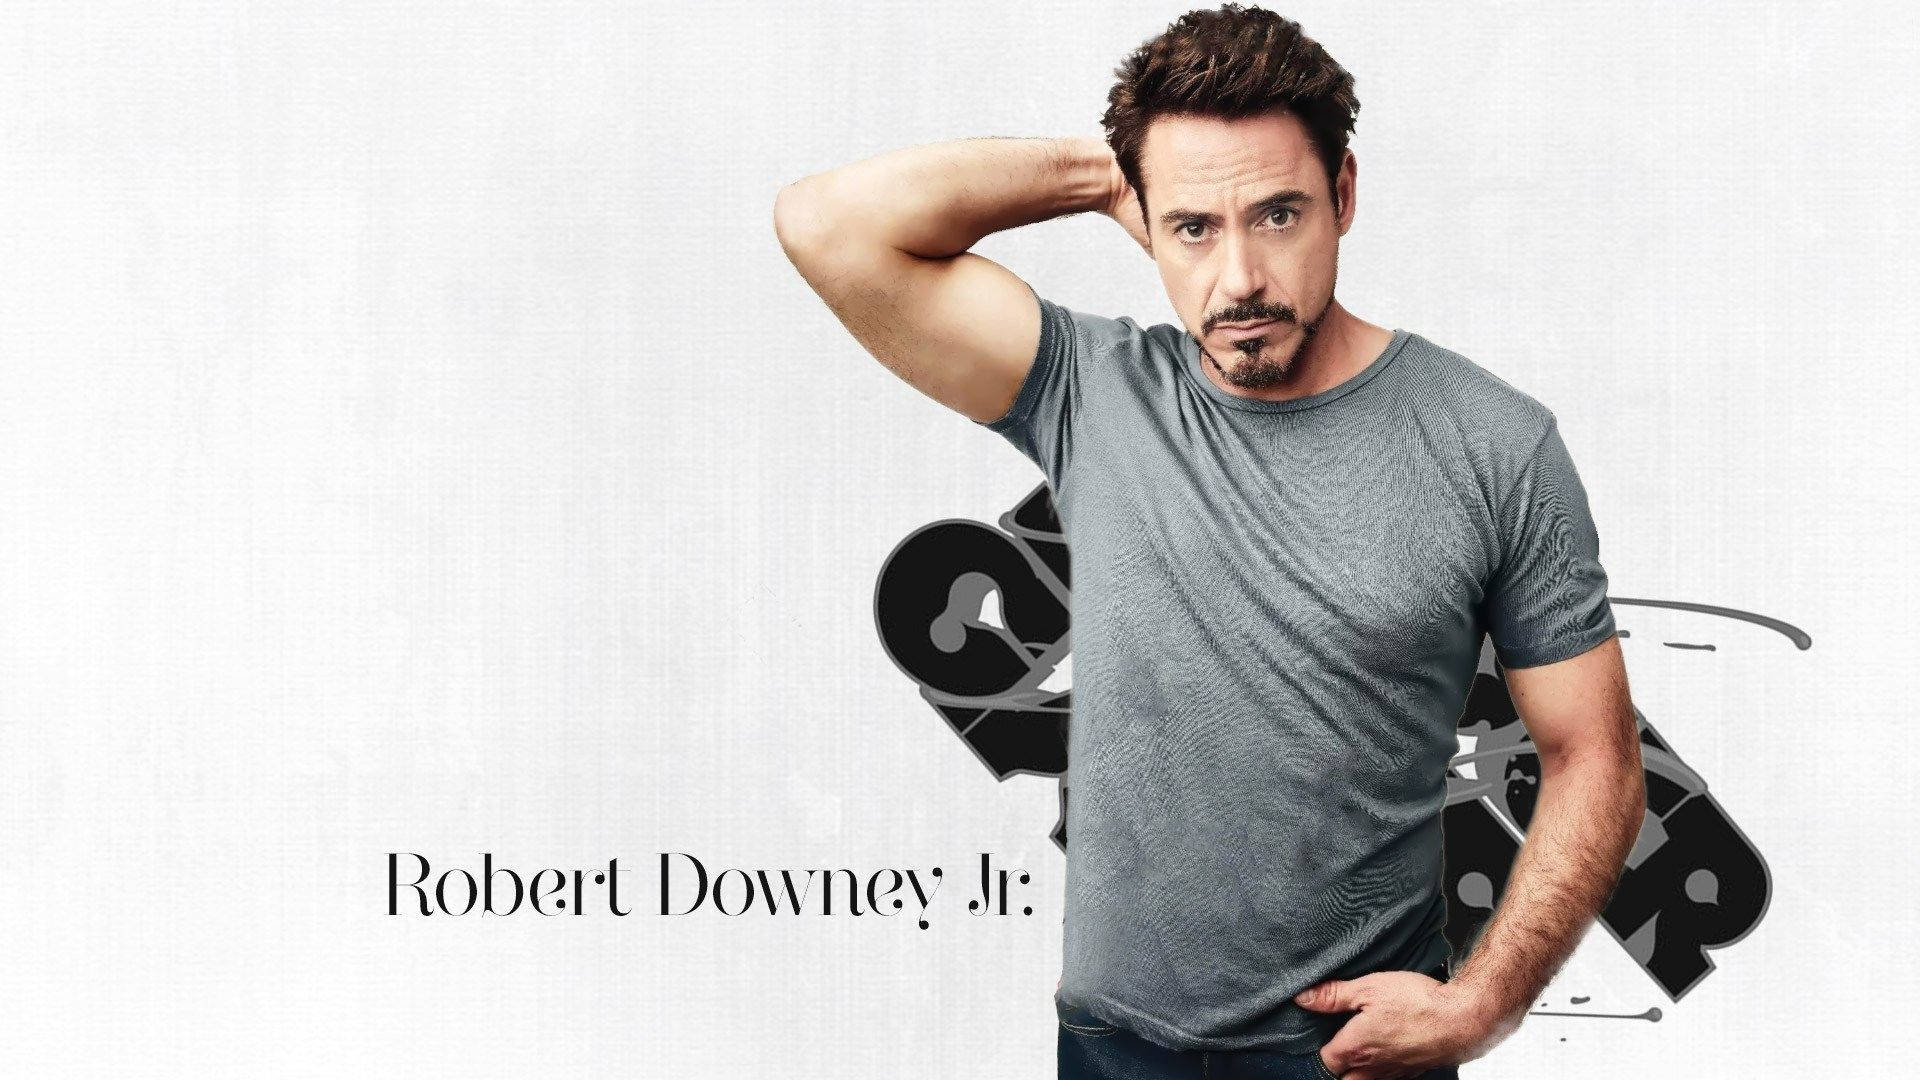 Robert Downey Jr. Model Pose Wallpaper